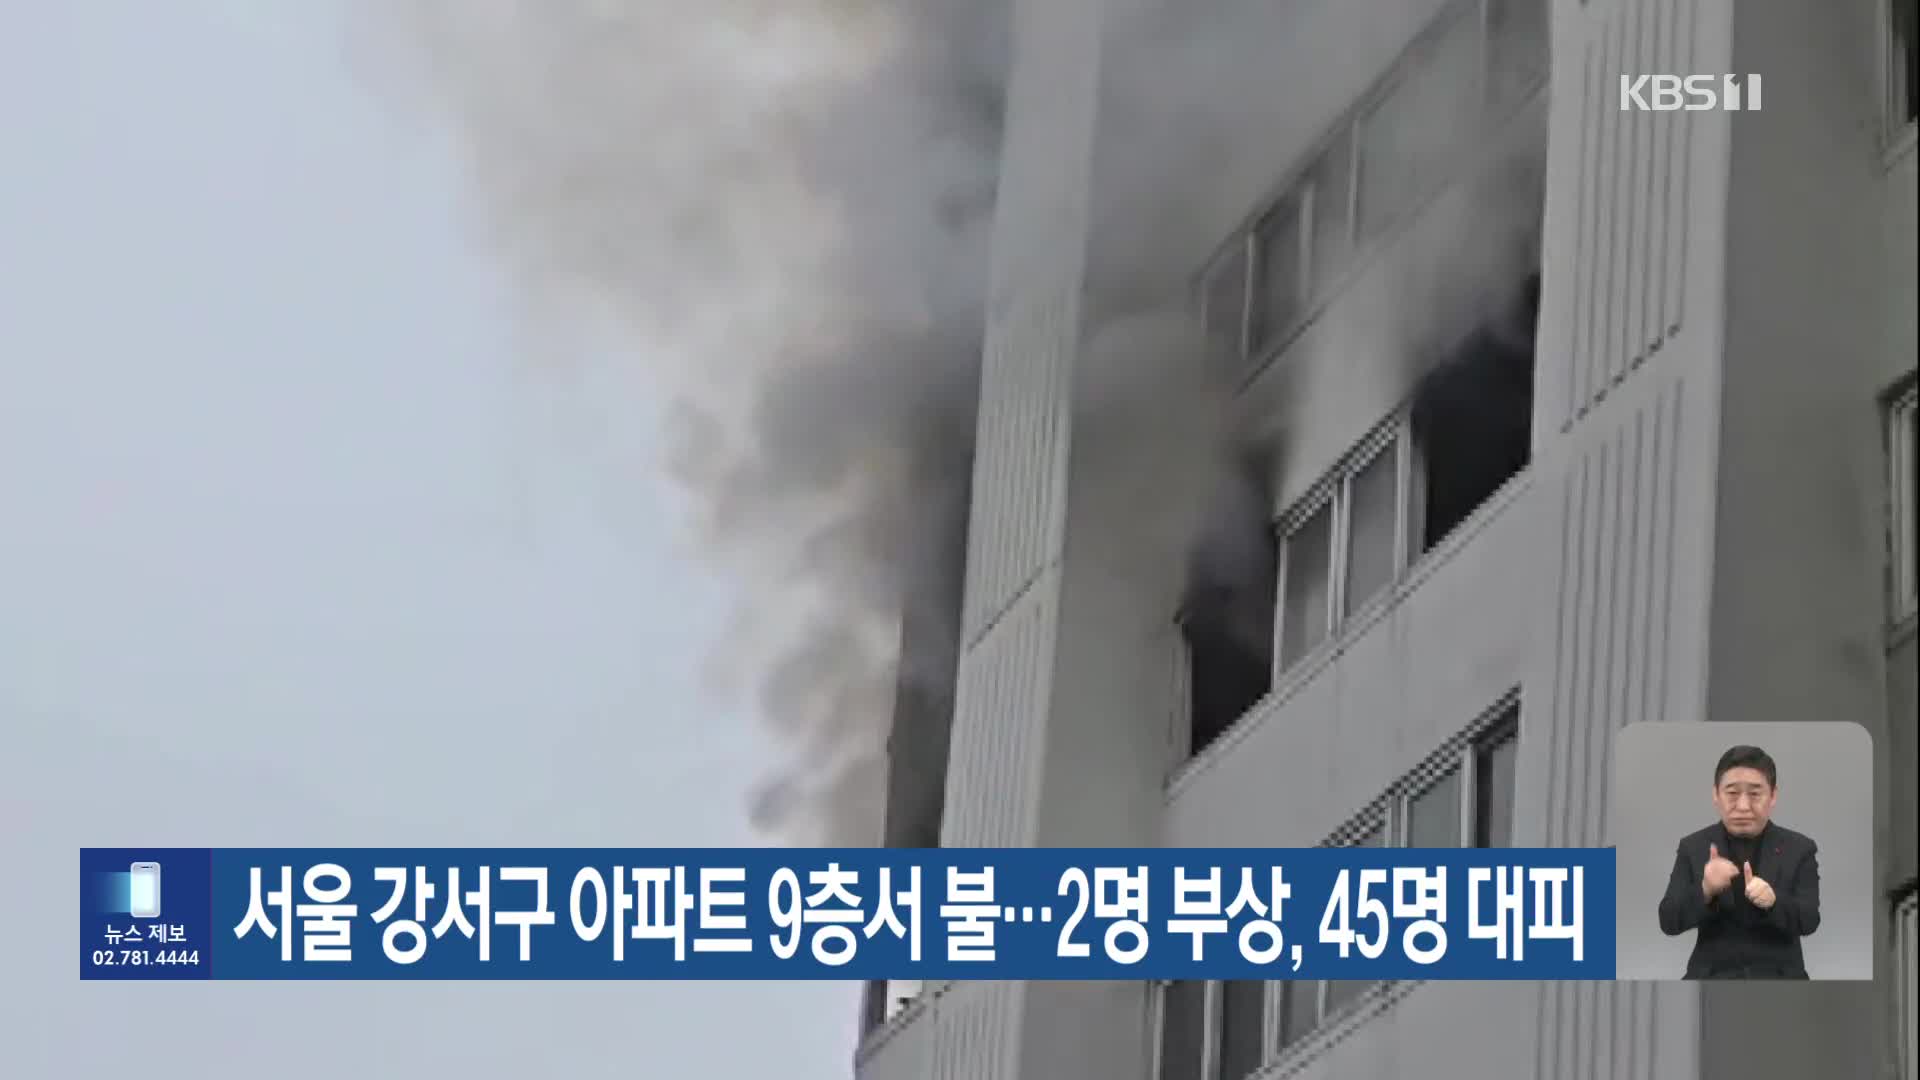 서울 강서구 아파트 9층서 불…2명 부상, 45명 대피